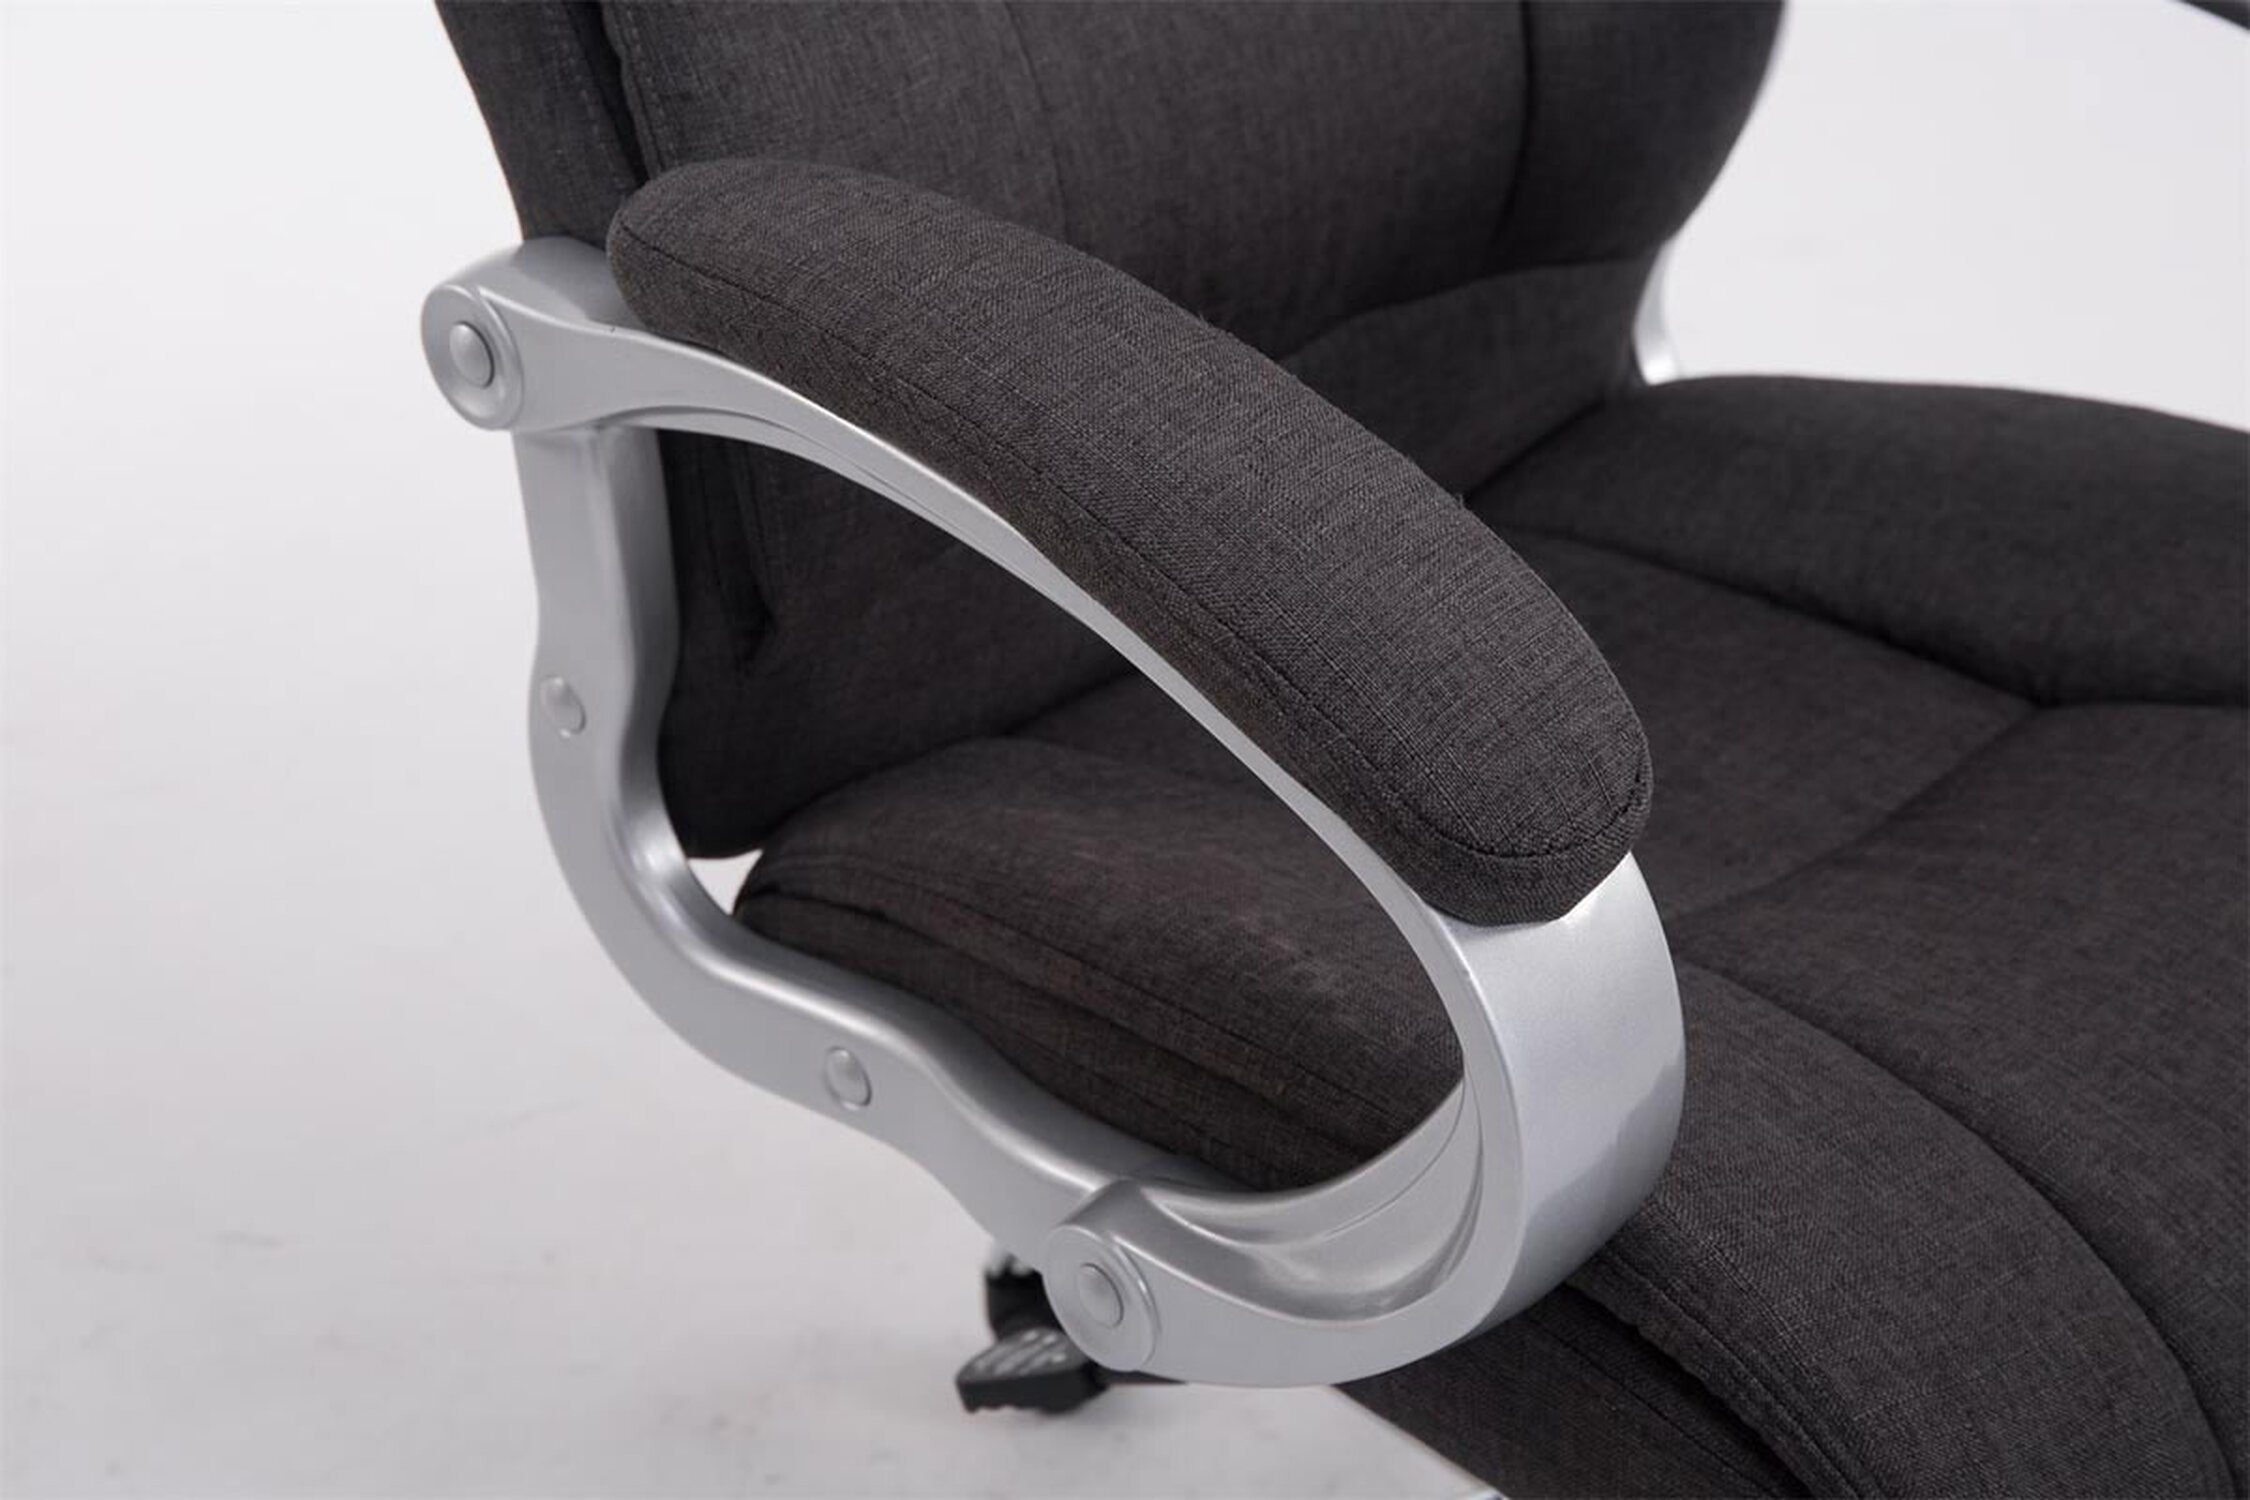 Gestell: - Apodo Rückenlehne TPFLiving Sitz: höhenverstellbar dunkelgrau Stoff bequemer 360° und Drehstuhl, XXL), Bürostuhl mit - (Schreibtischstuhl, Bürostuhl Metall drehbar Chefsessel, chrom